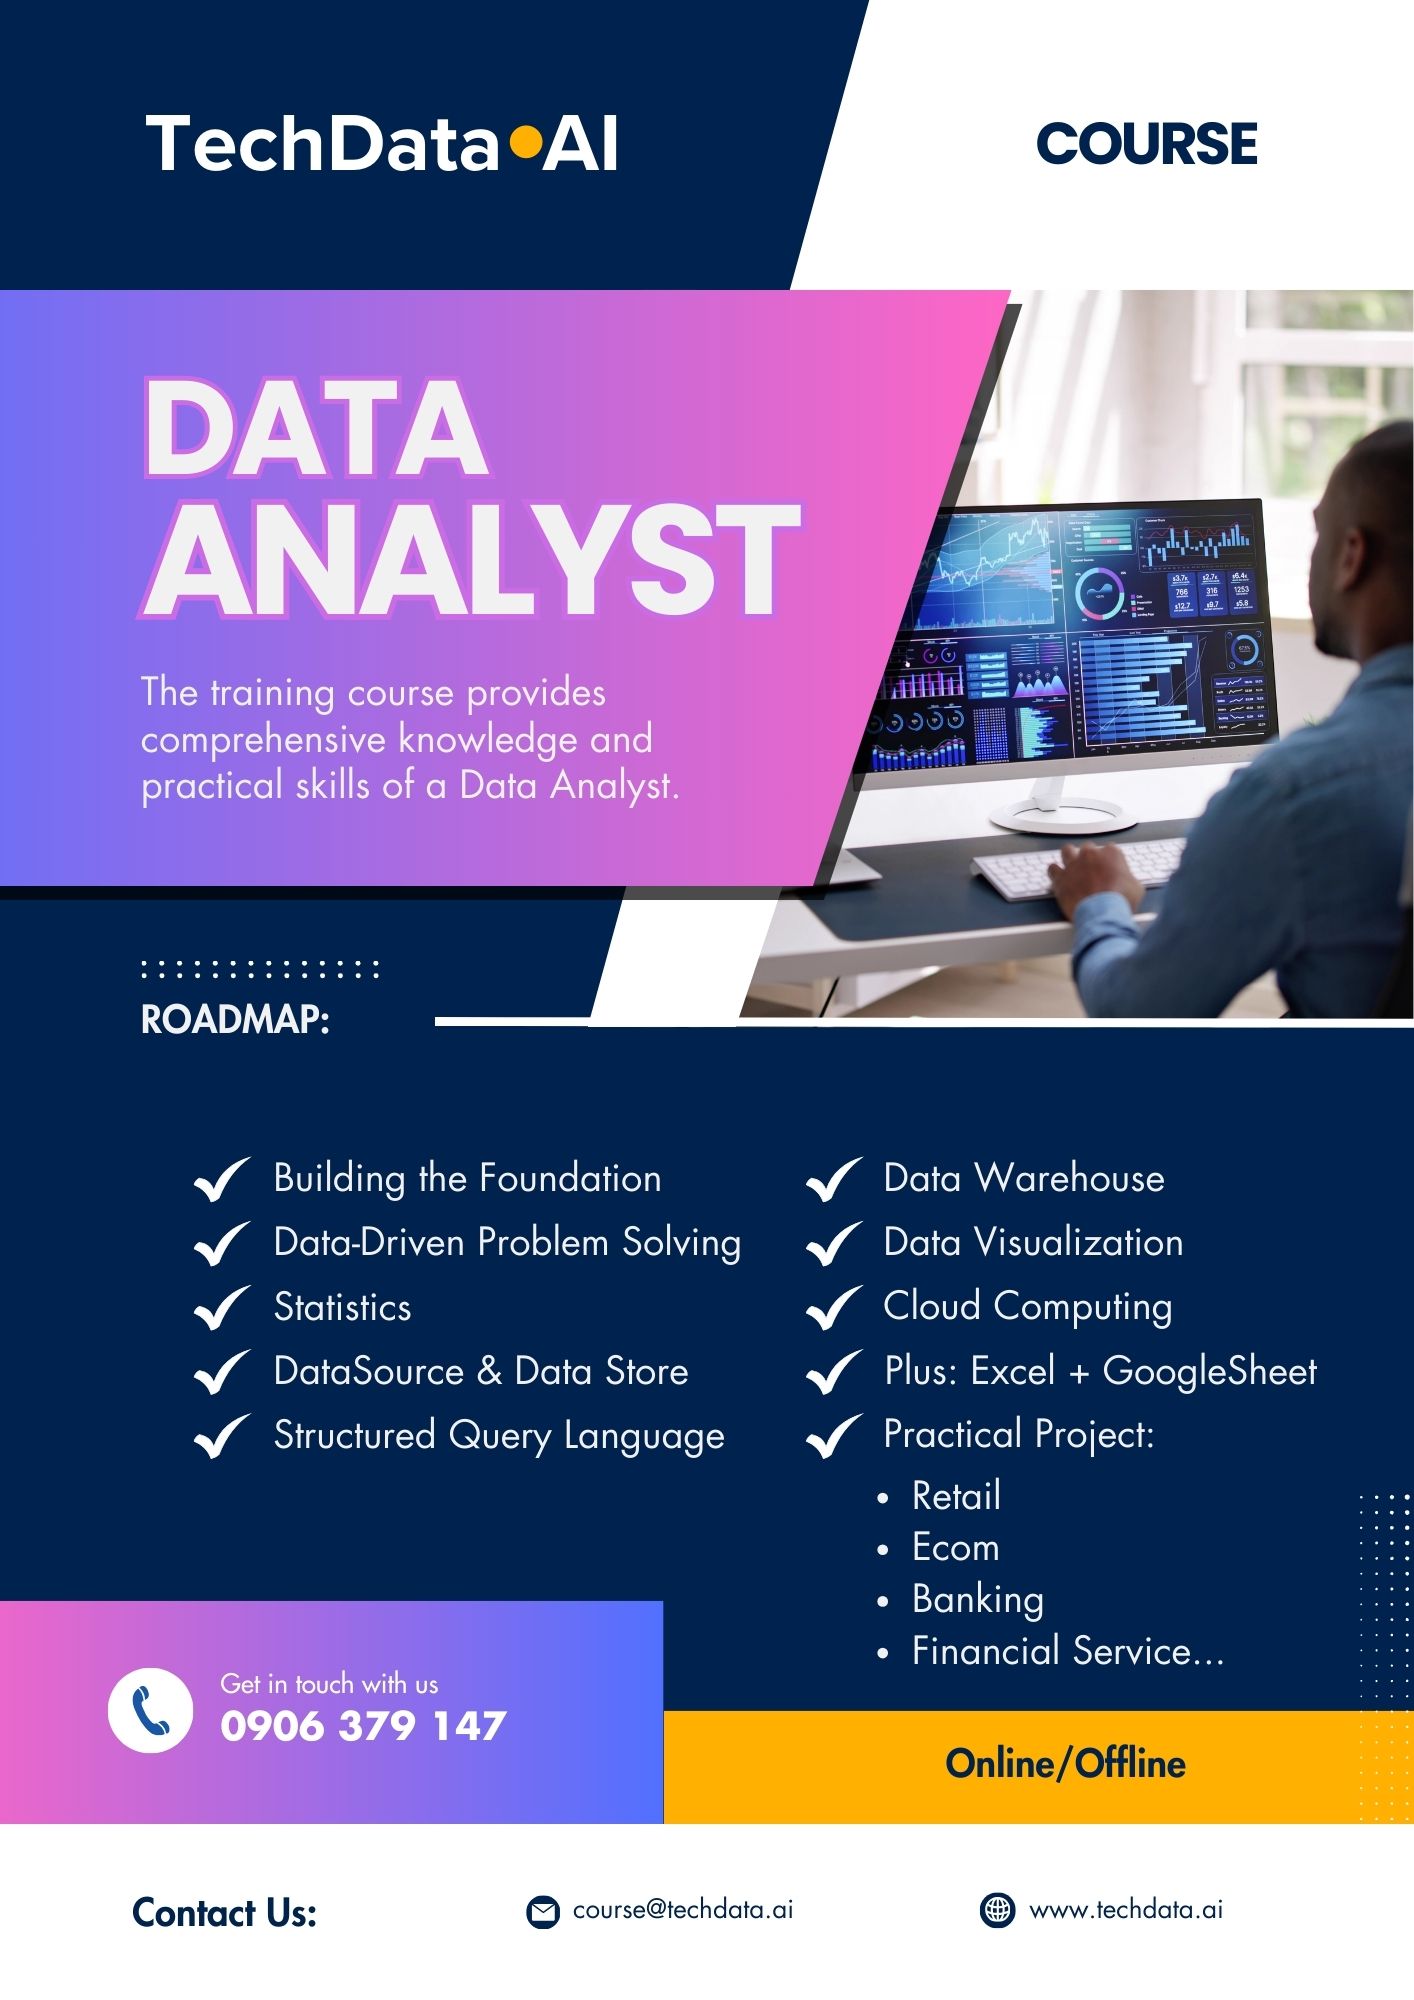 TechData.AI - Data Analyst Course